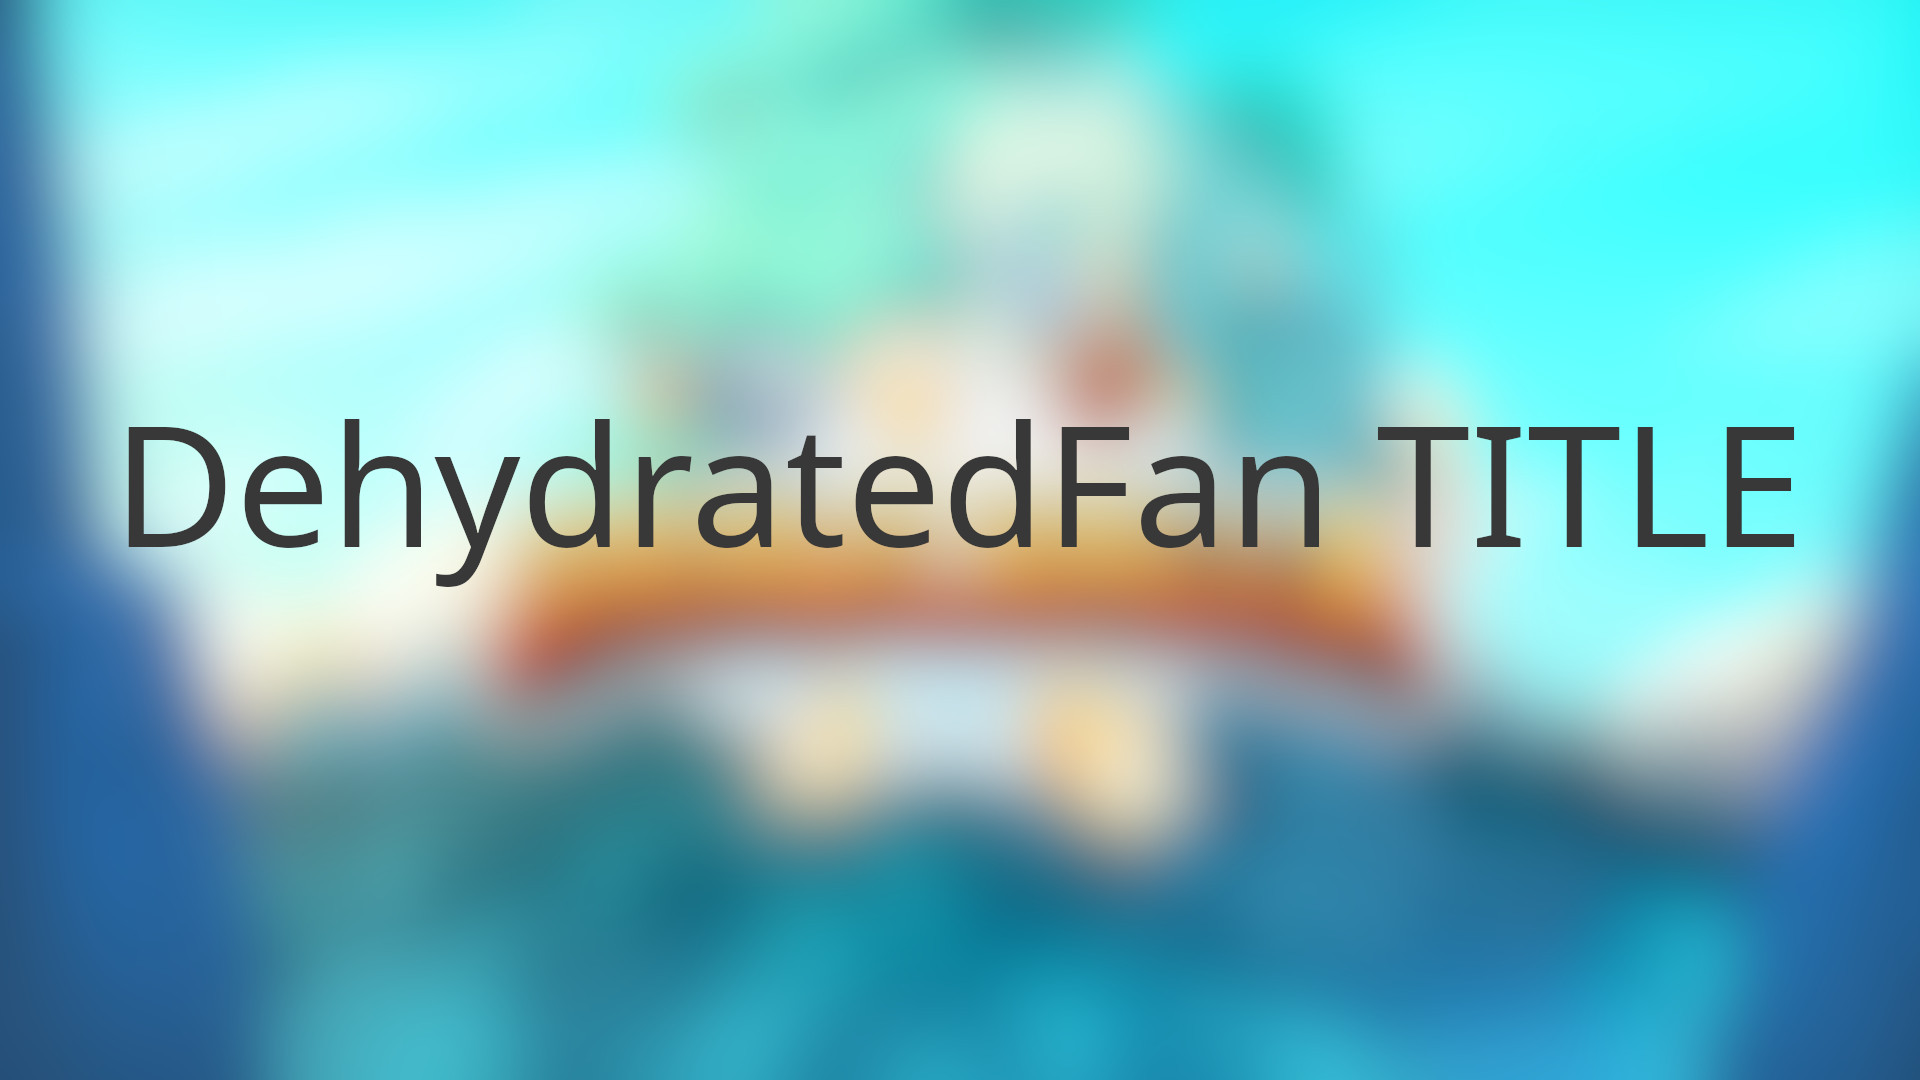 [$ 1.11] Brawlhalla - DehydratedFan Title DLC CD Key